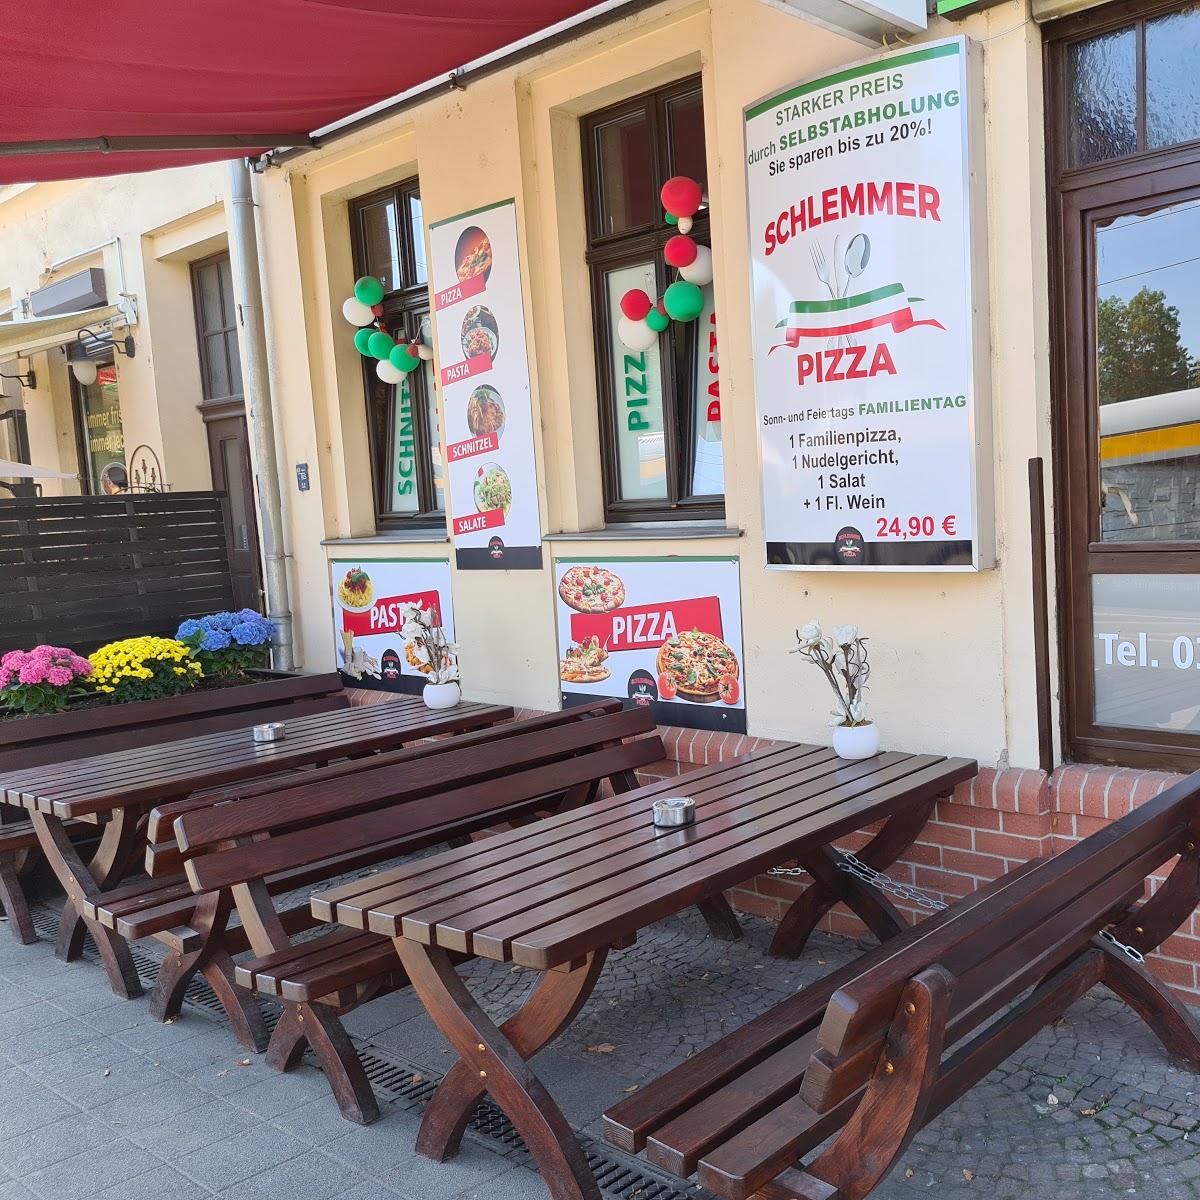 Restaurant "Schlemmer Pizza" in Leipzig